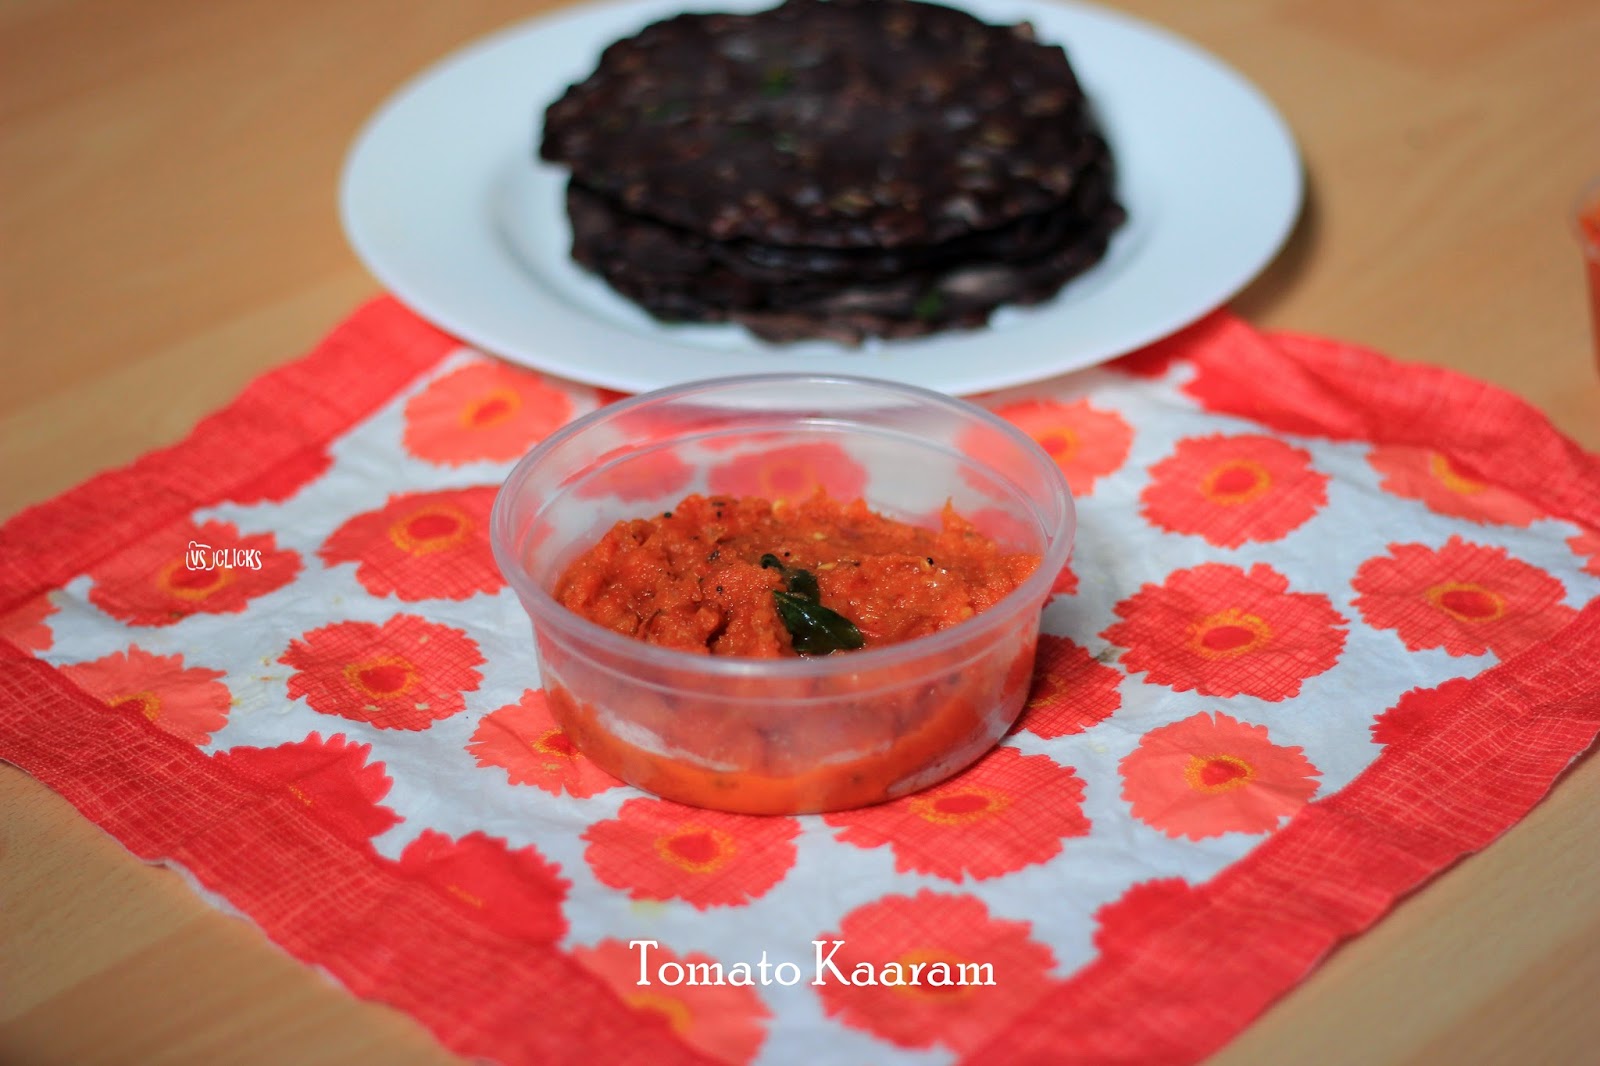 Tomato Kaaram